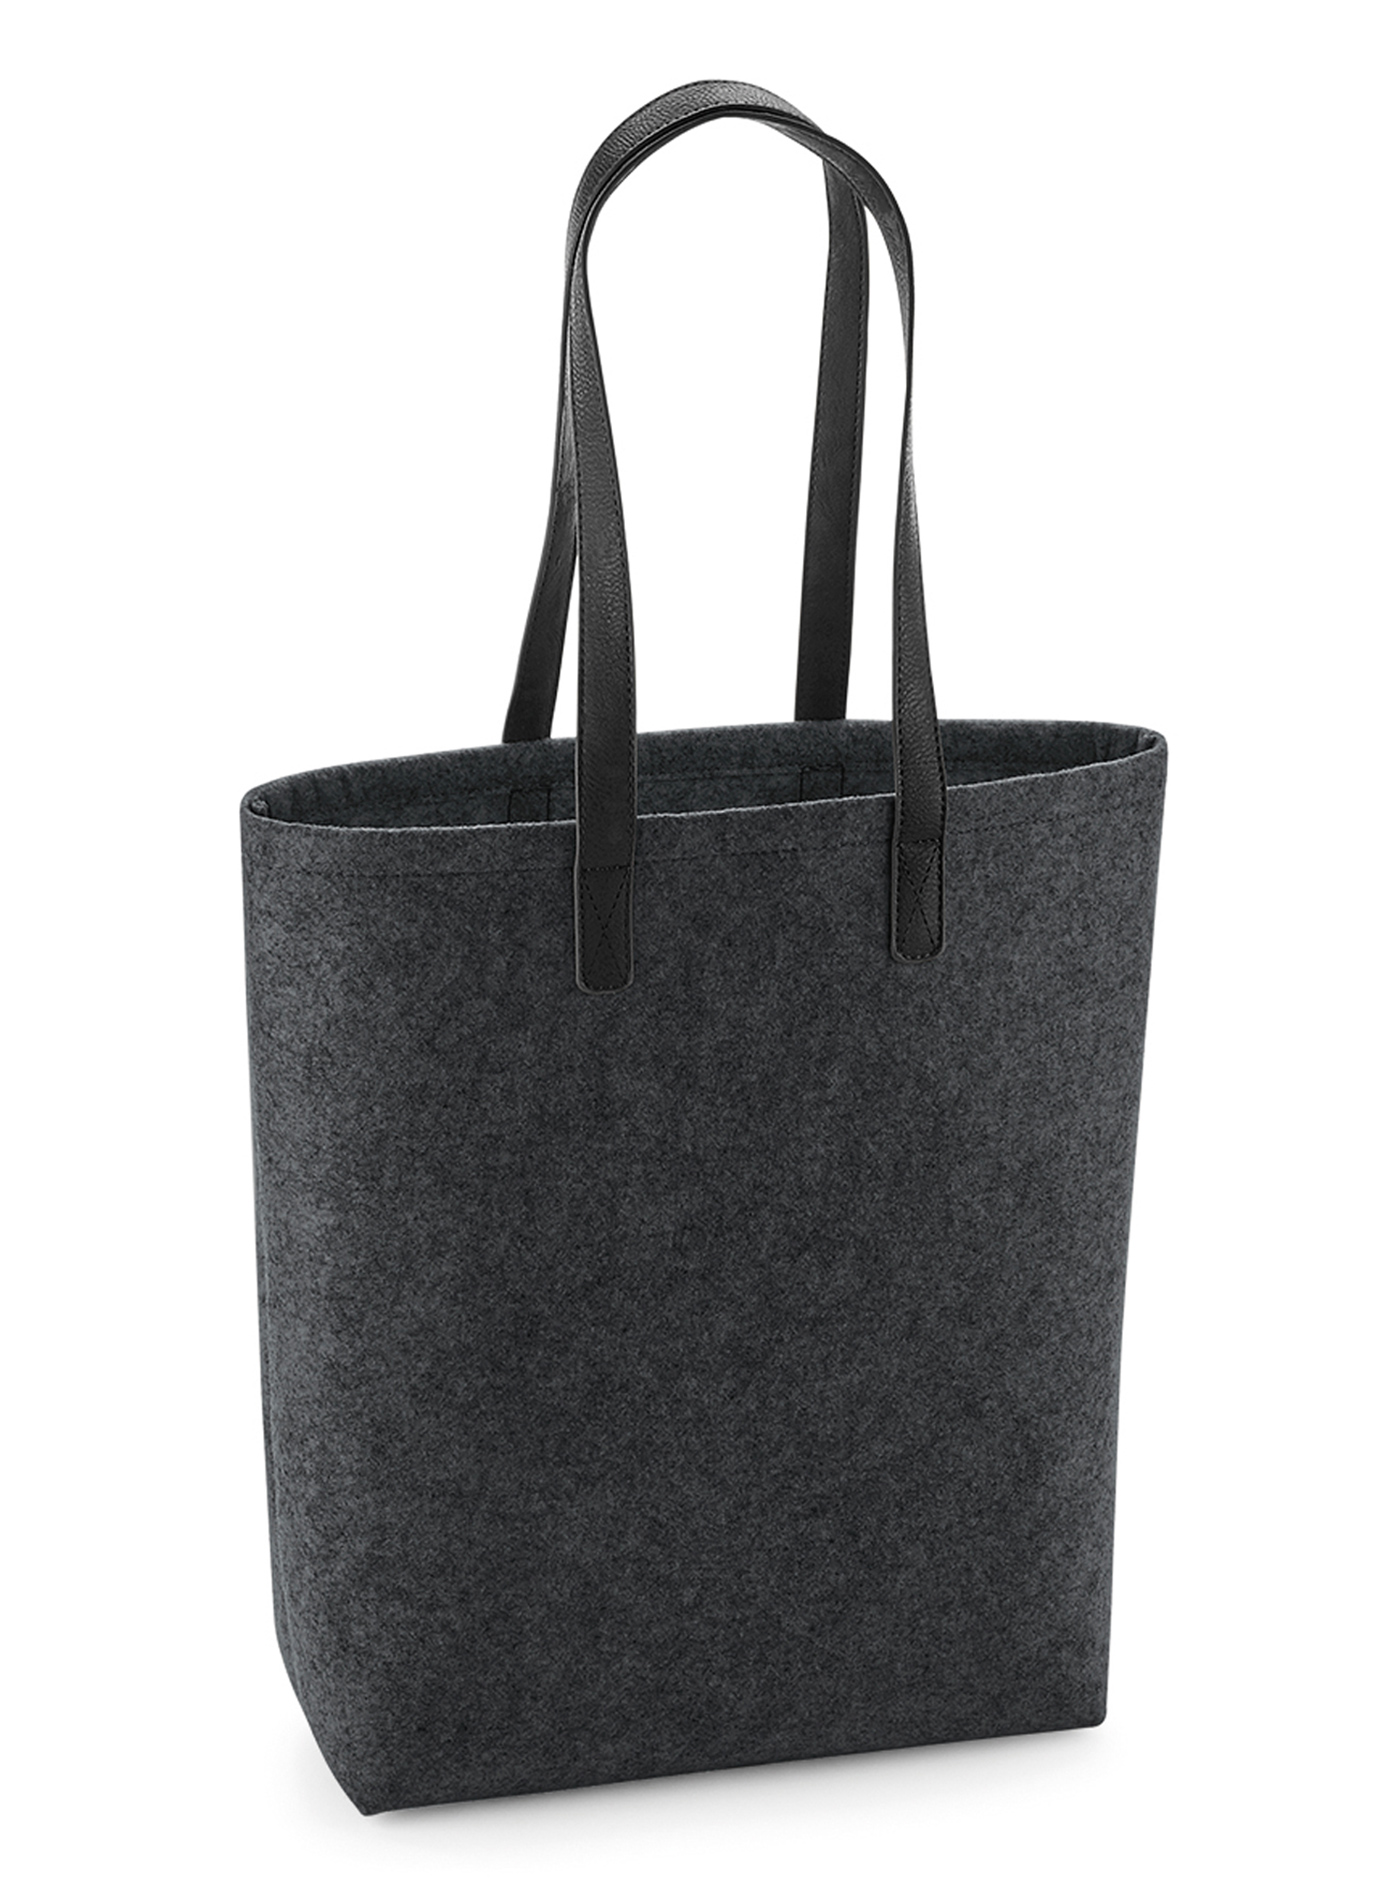 Plstěná taška Bag Base premium - Charcoal univerzal